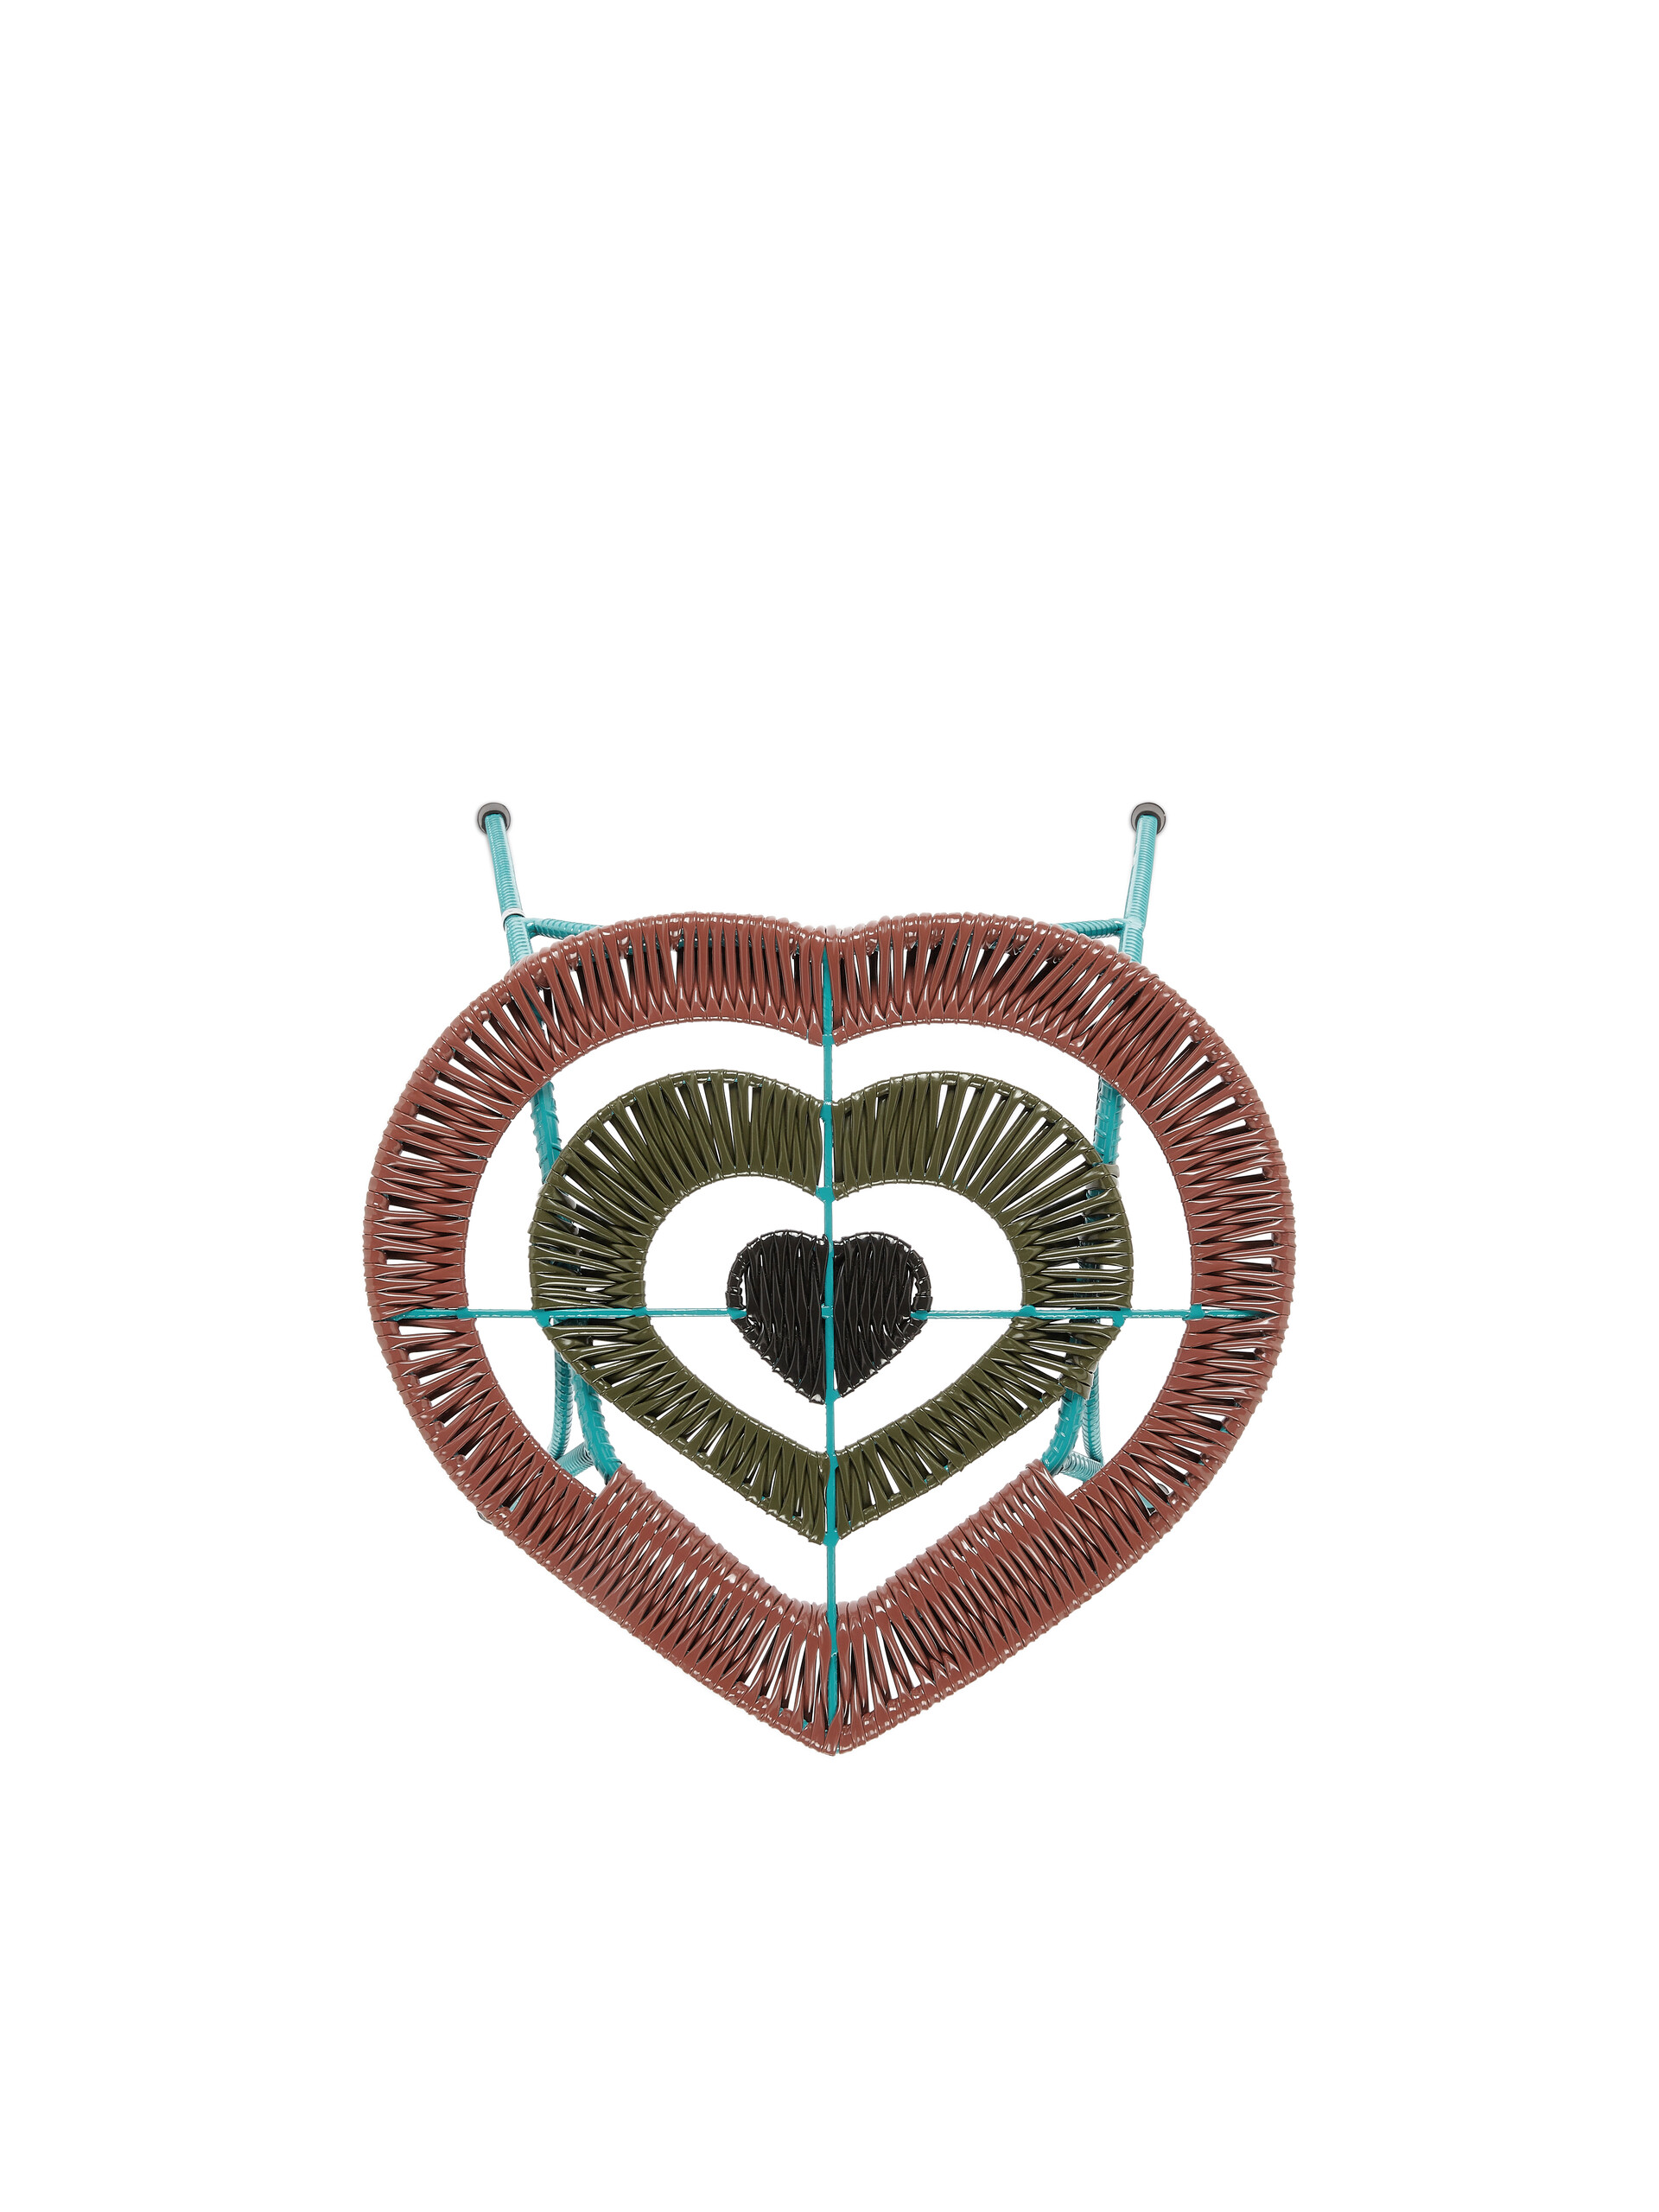 Taburete mesa MARNI MARKET en forma de corazón - Muebles - Image 3